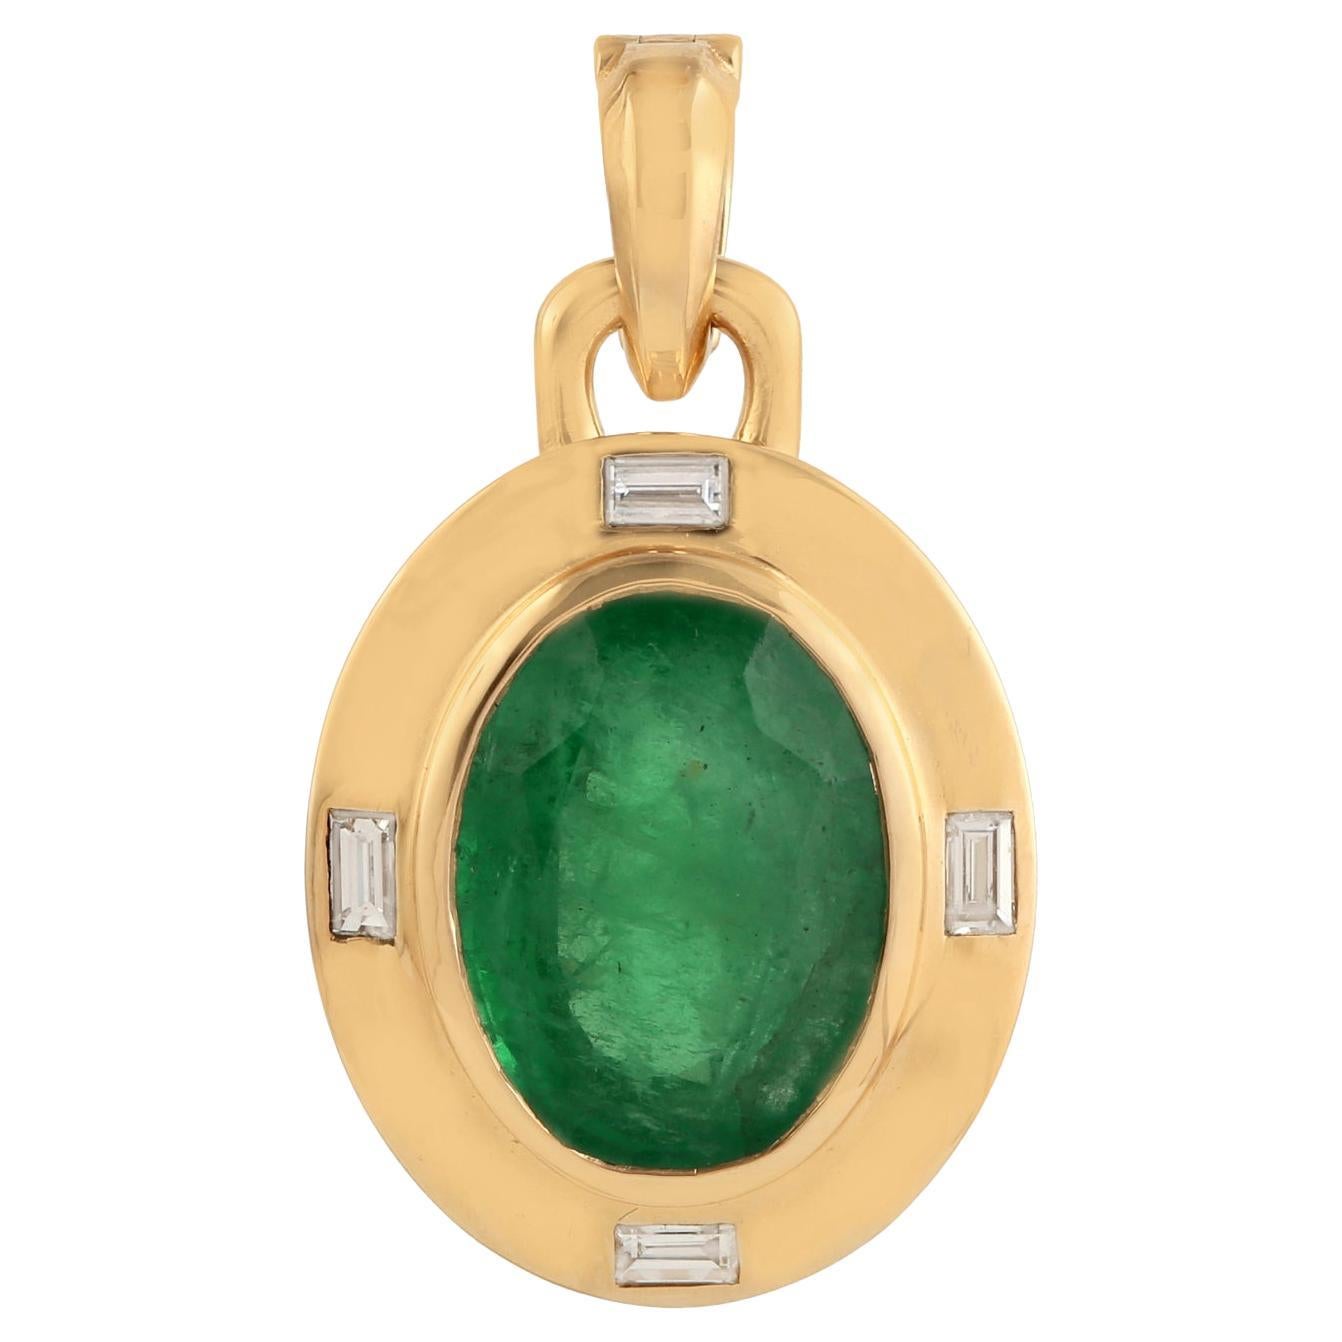 Ovaler Smaragd-Anhänger in Form eines Smaragds mit Diamanten in 18 Karat Gelbgoldrahmen eingeschlossen